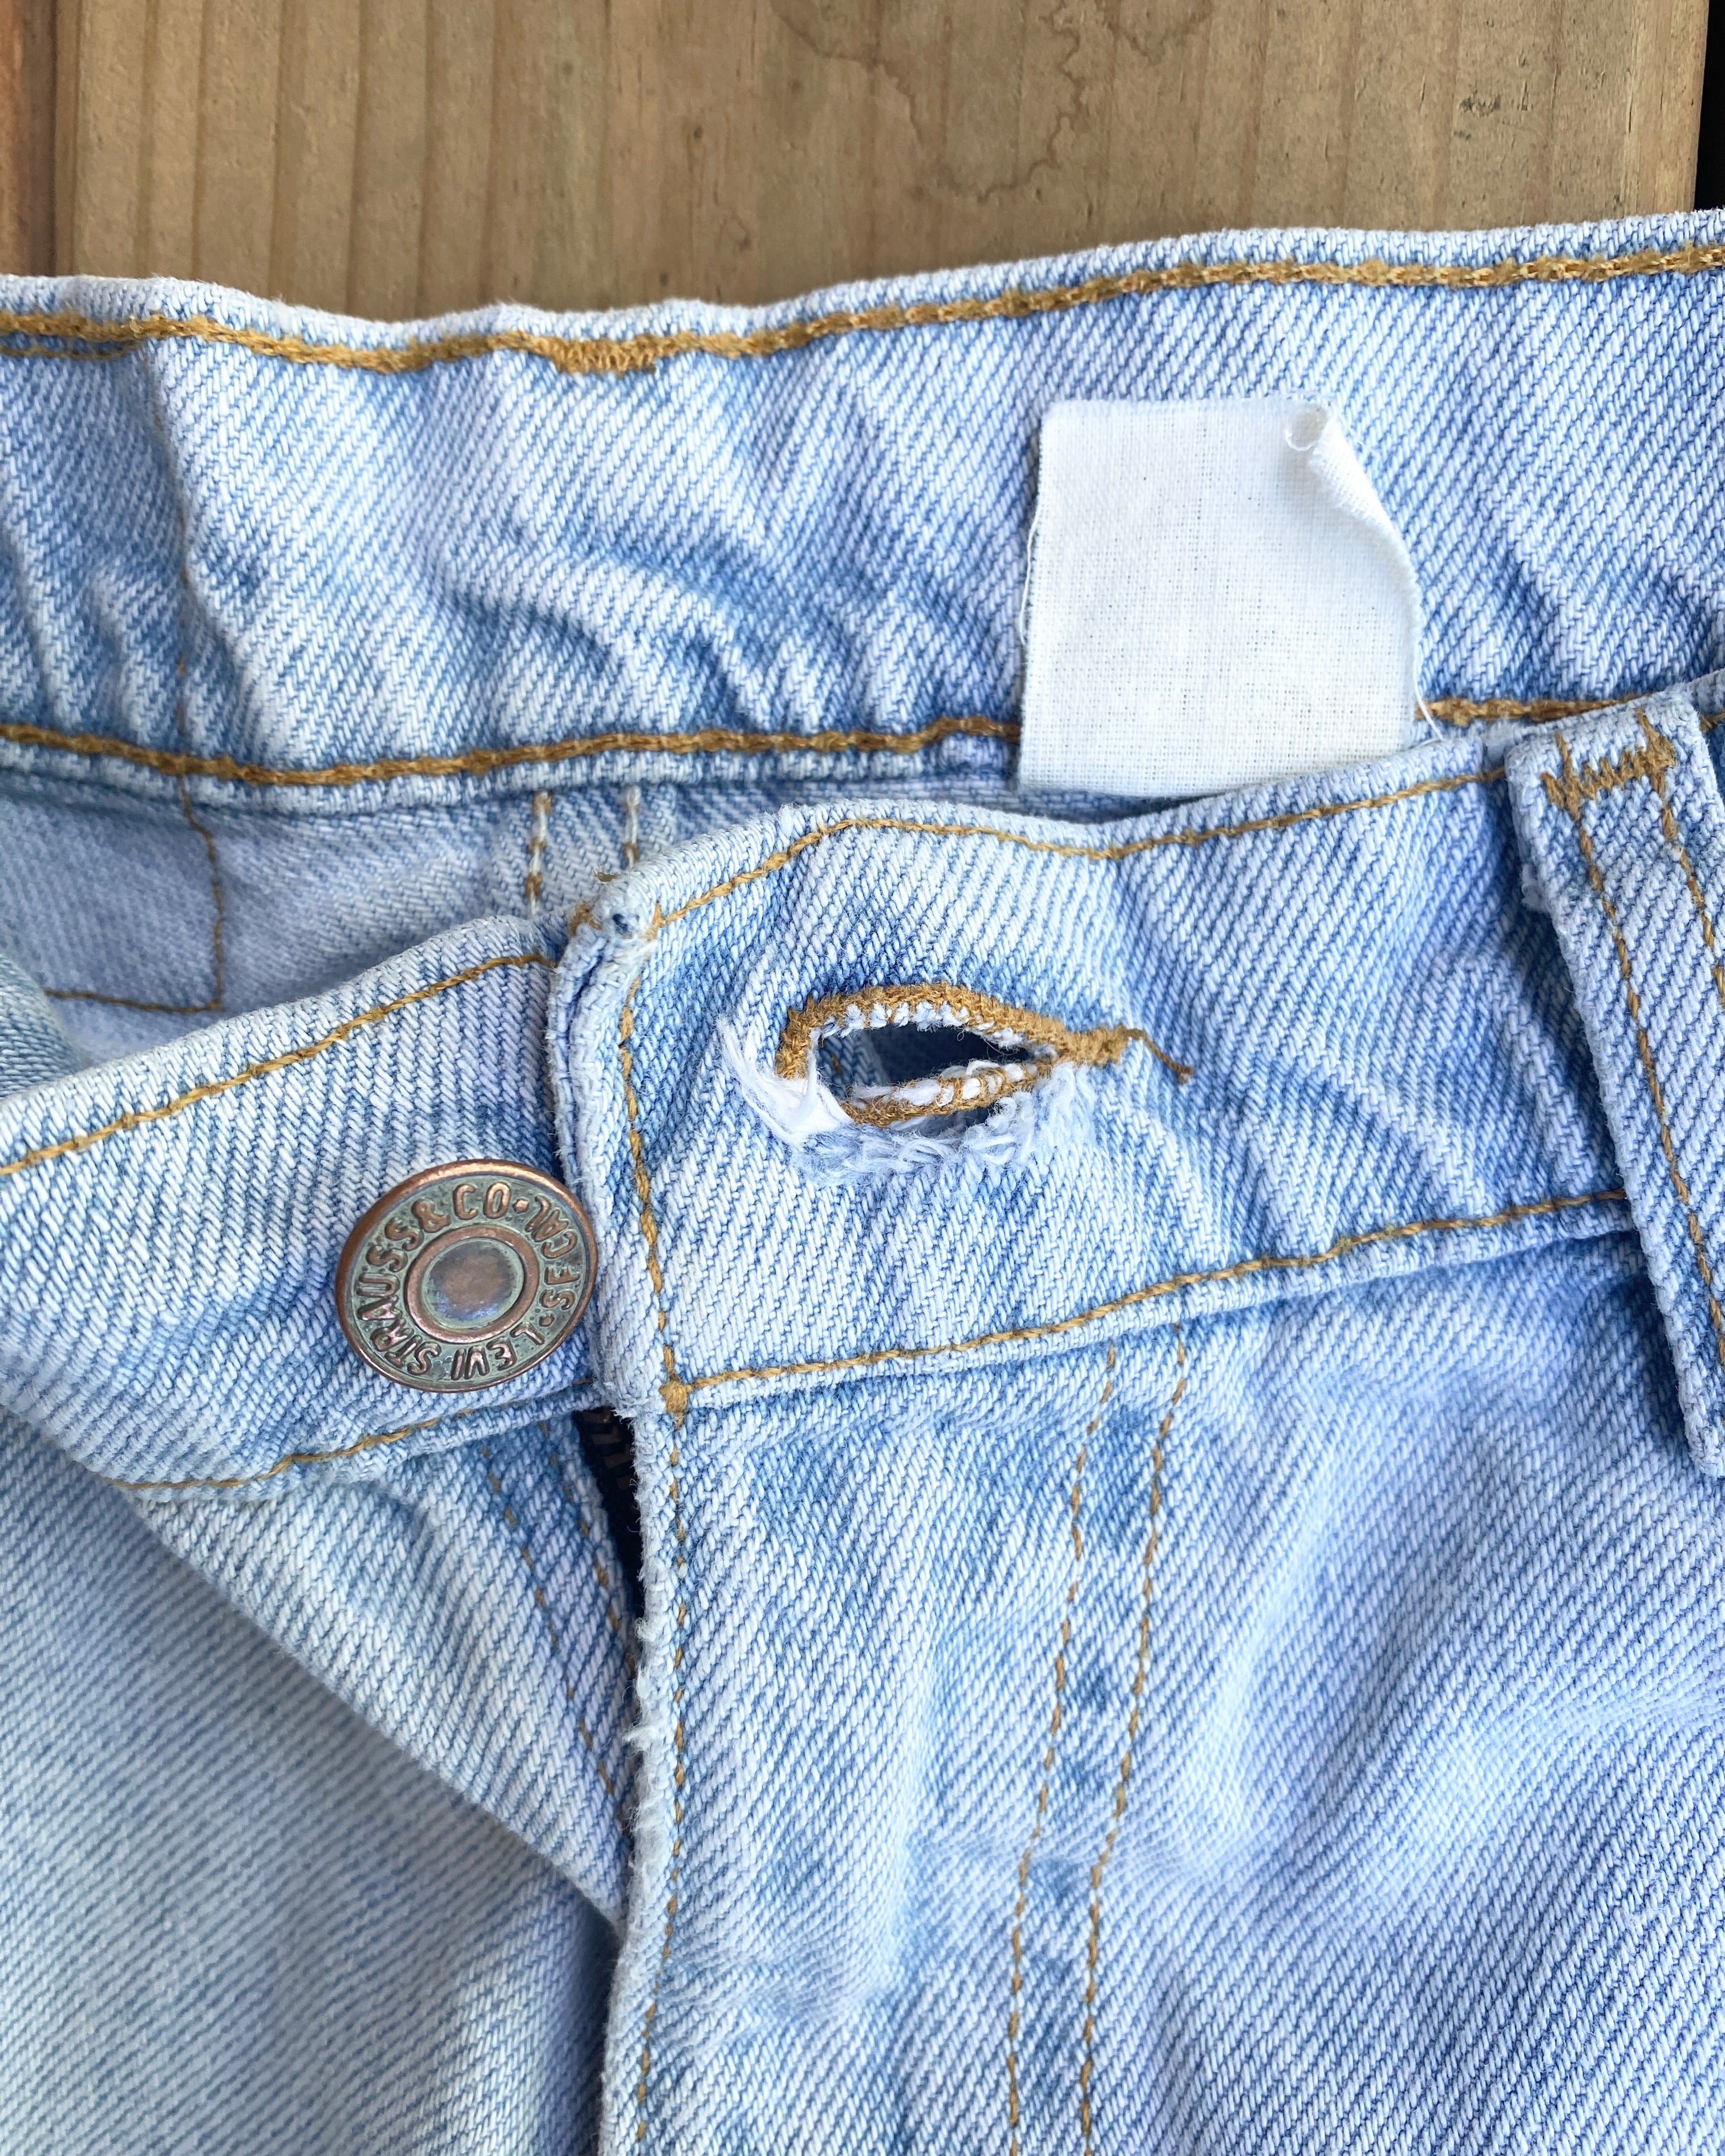 Vintage 1980 / 1990s Orange Tab Levis 560 Light Wash Bermuda Cutoffs Denim Jean Shorts 32 Made in USA